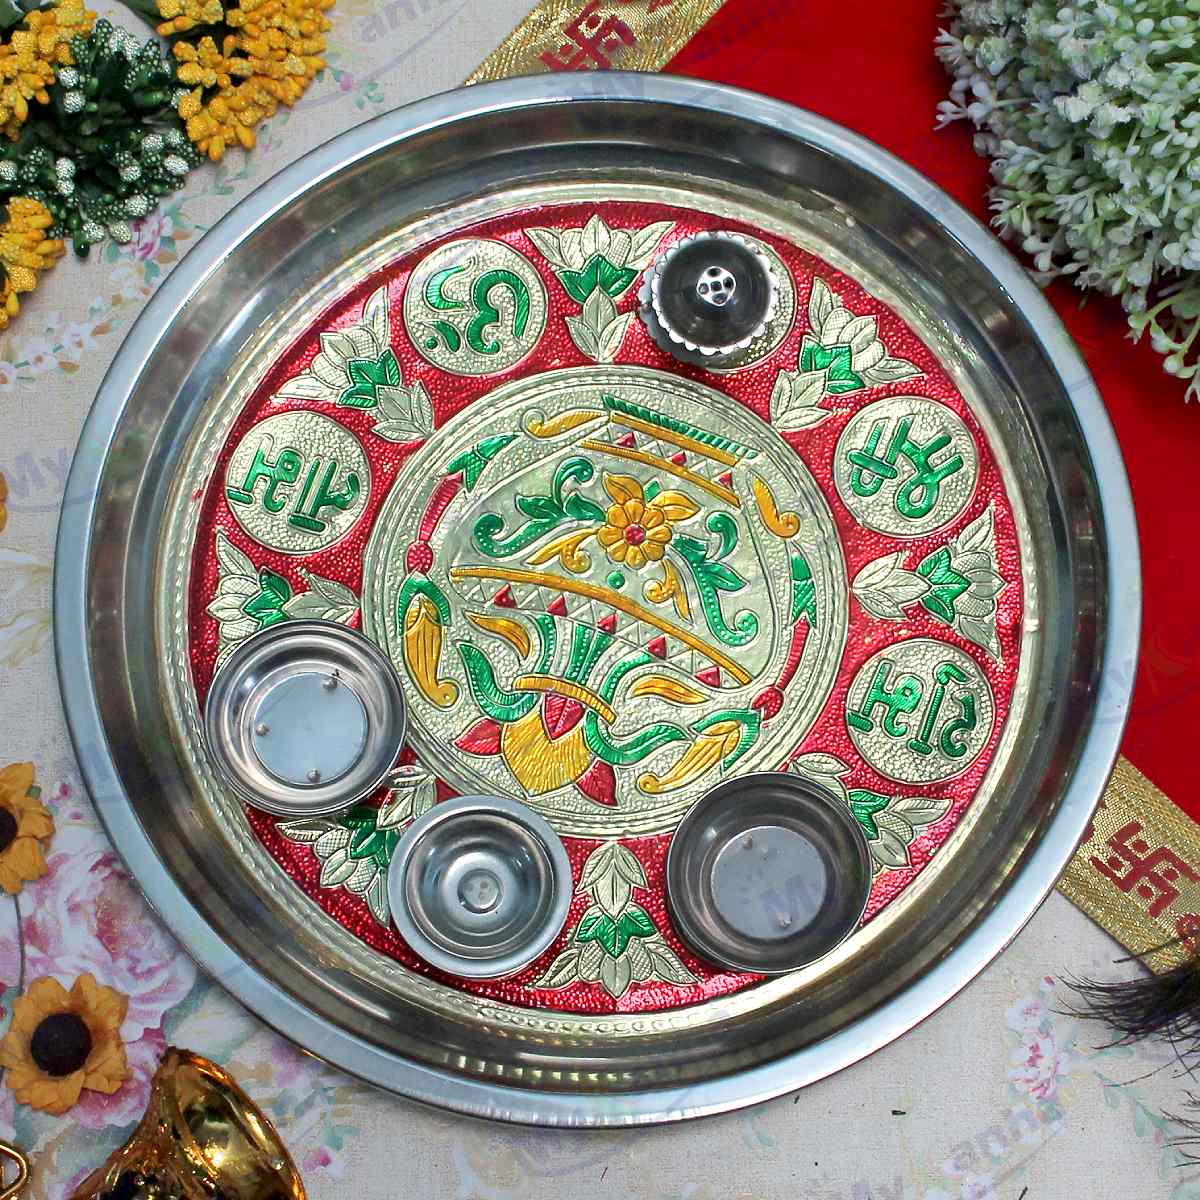 Meenakari decorated Pooja Thali with Diya and Bowl